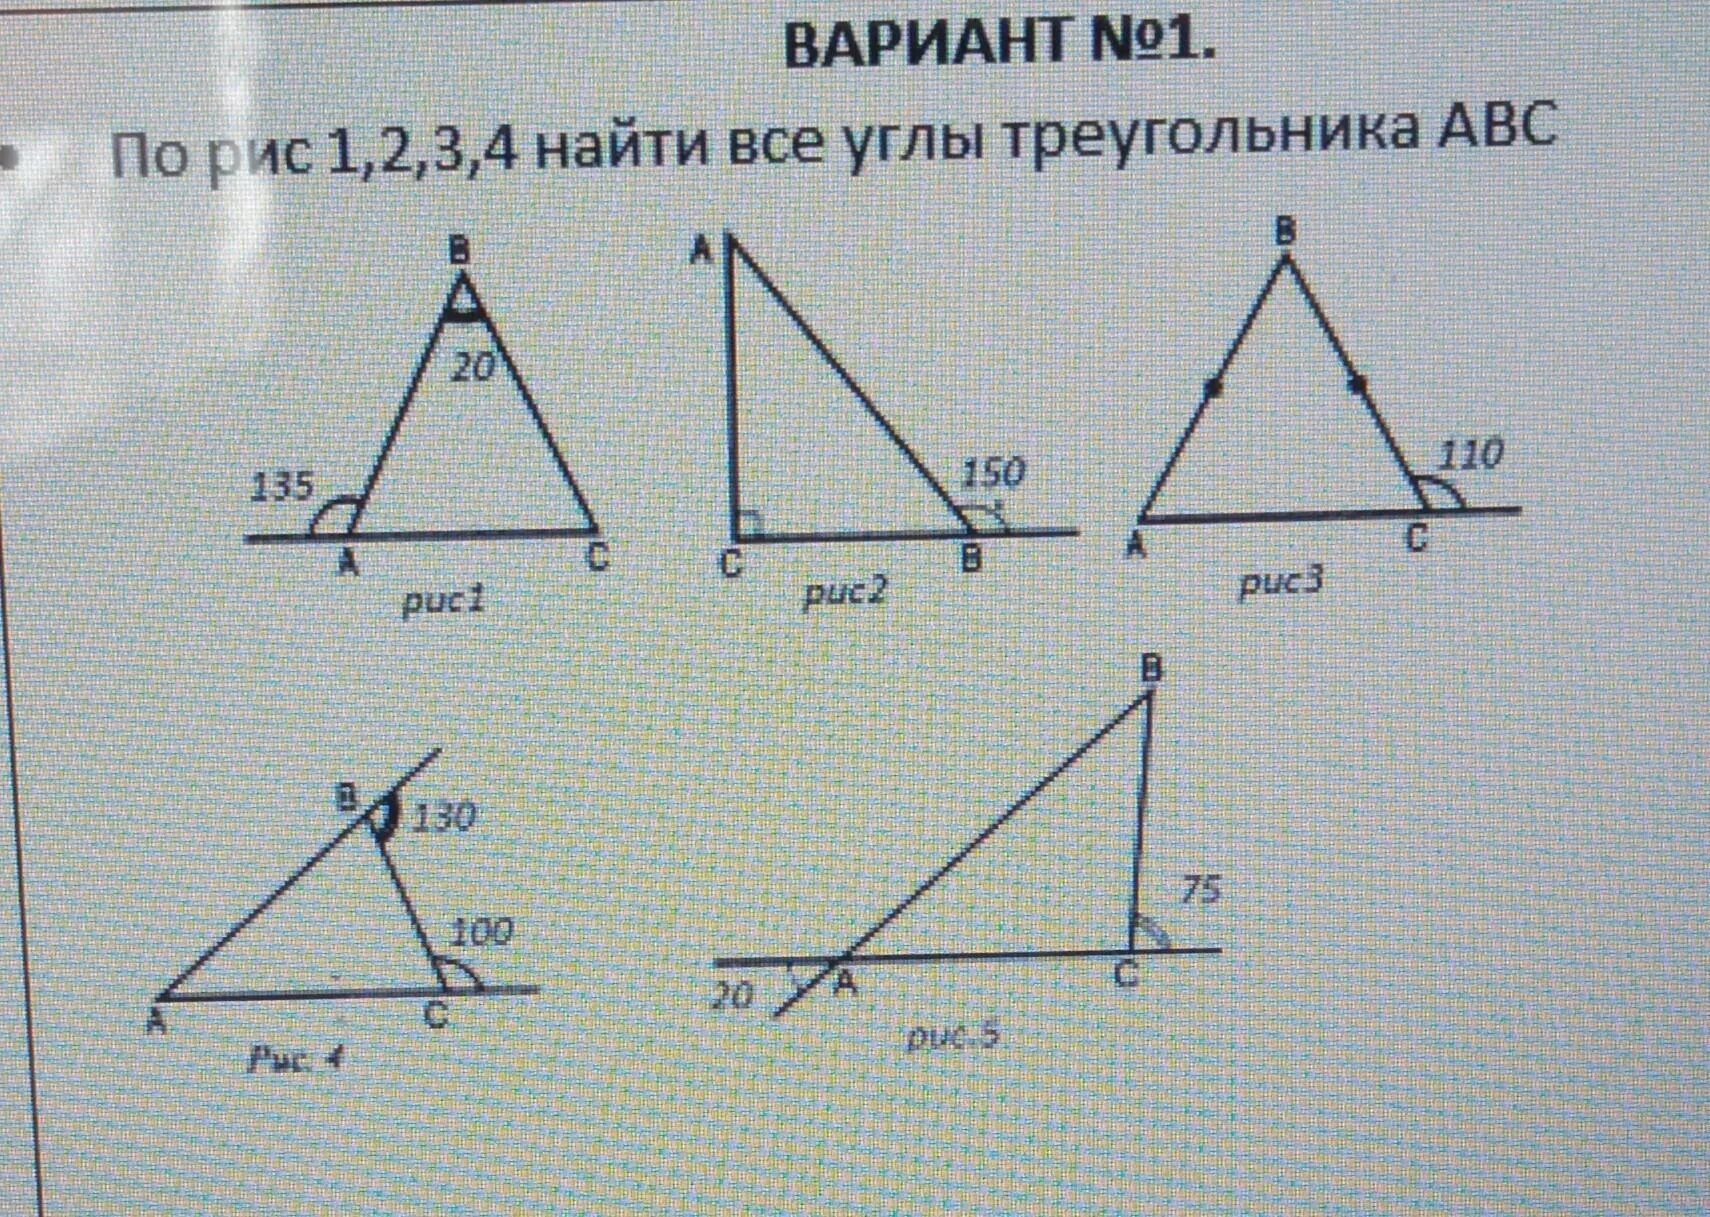 Геометрия вариант 1 в треугольнике авс